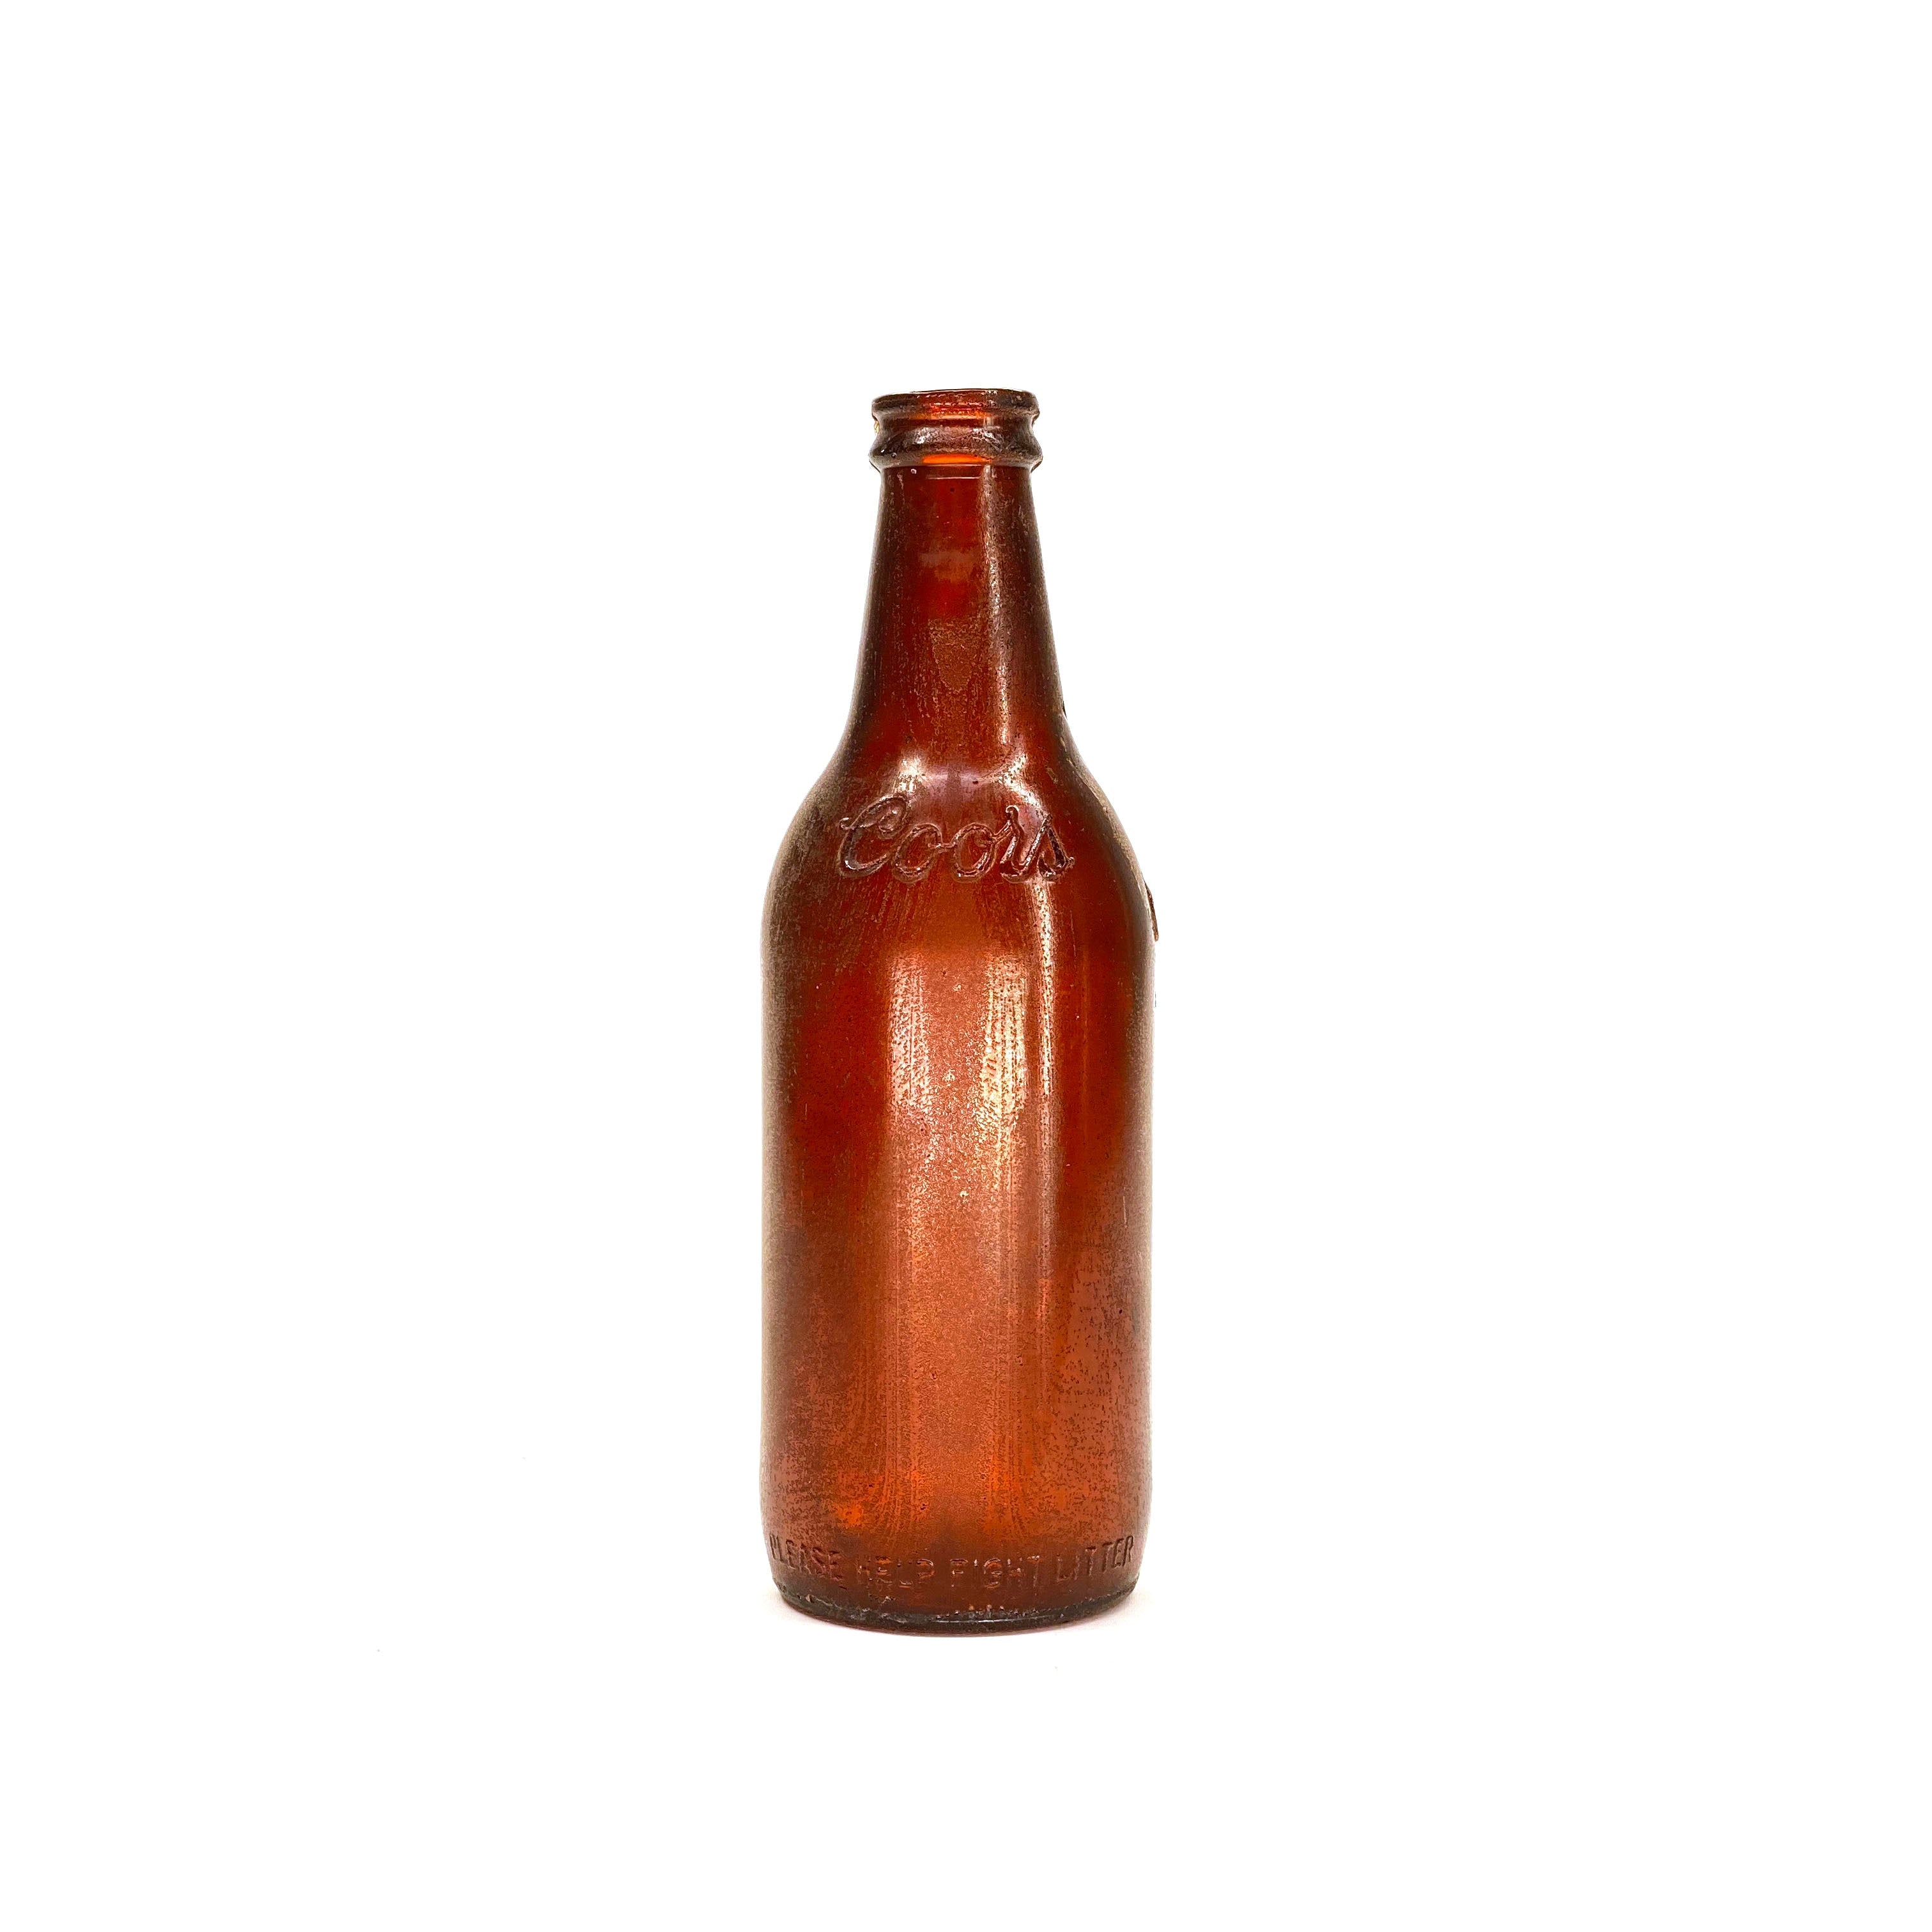 Breakaway Vintage Beer Bottle Prop